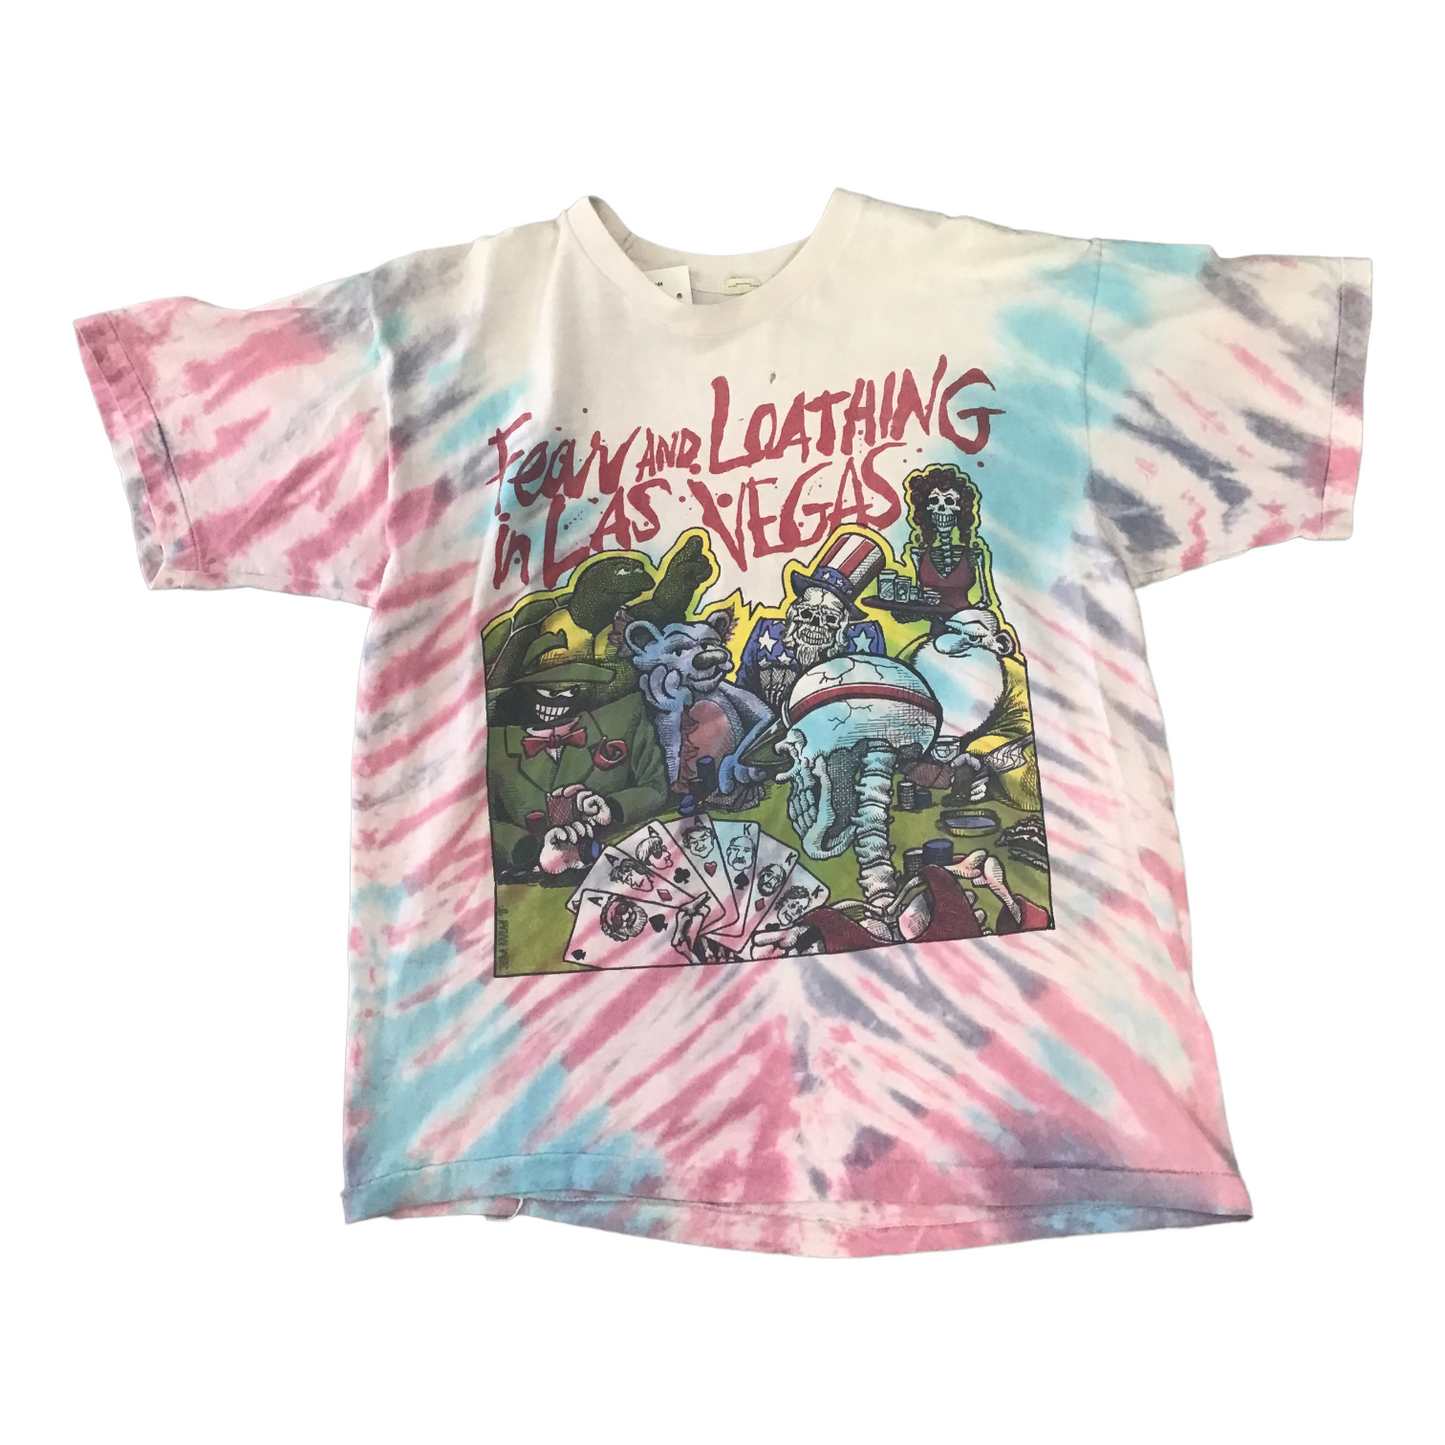 1995 GRATEFUL DEAD “Fear and Loathing in Las Vegas Tye Dye vintage band tee